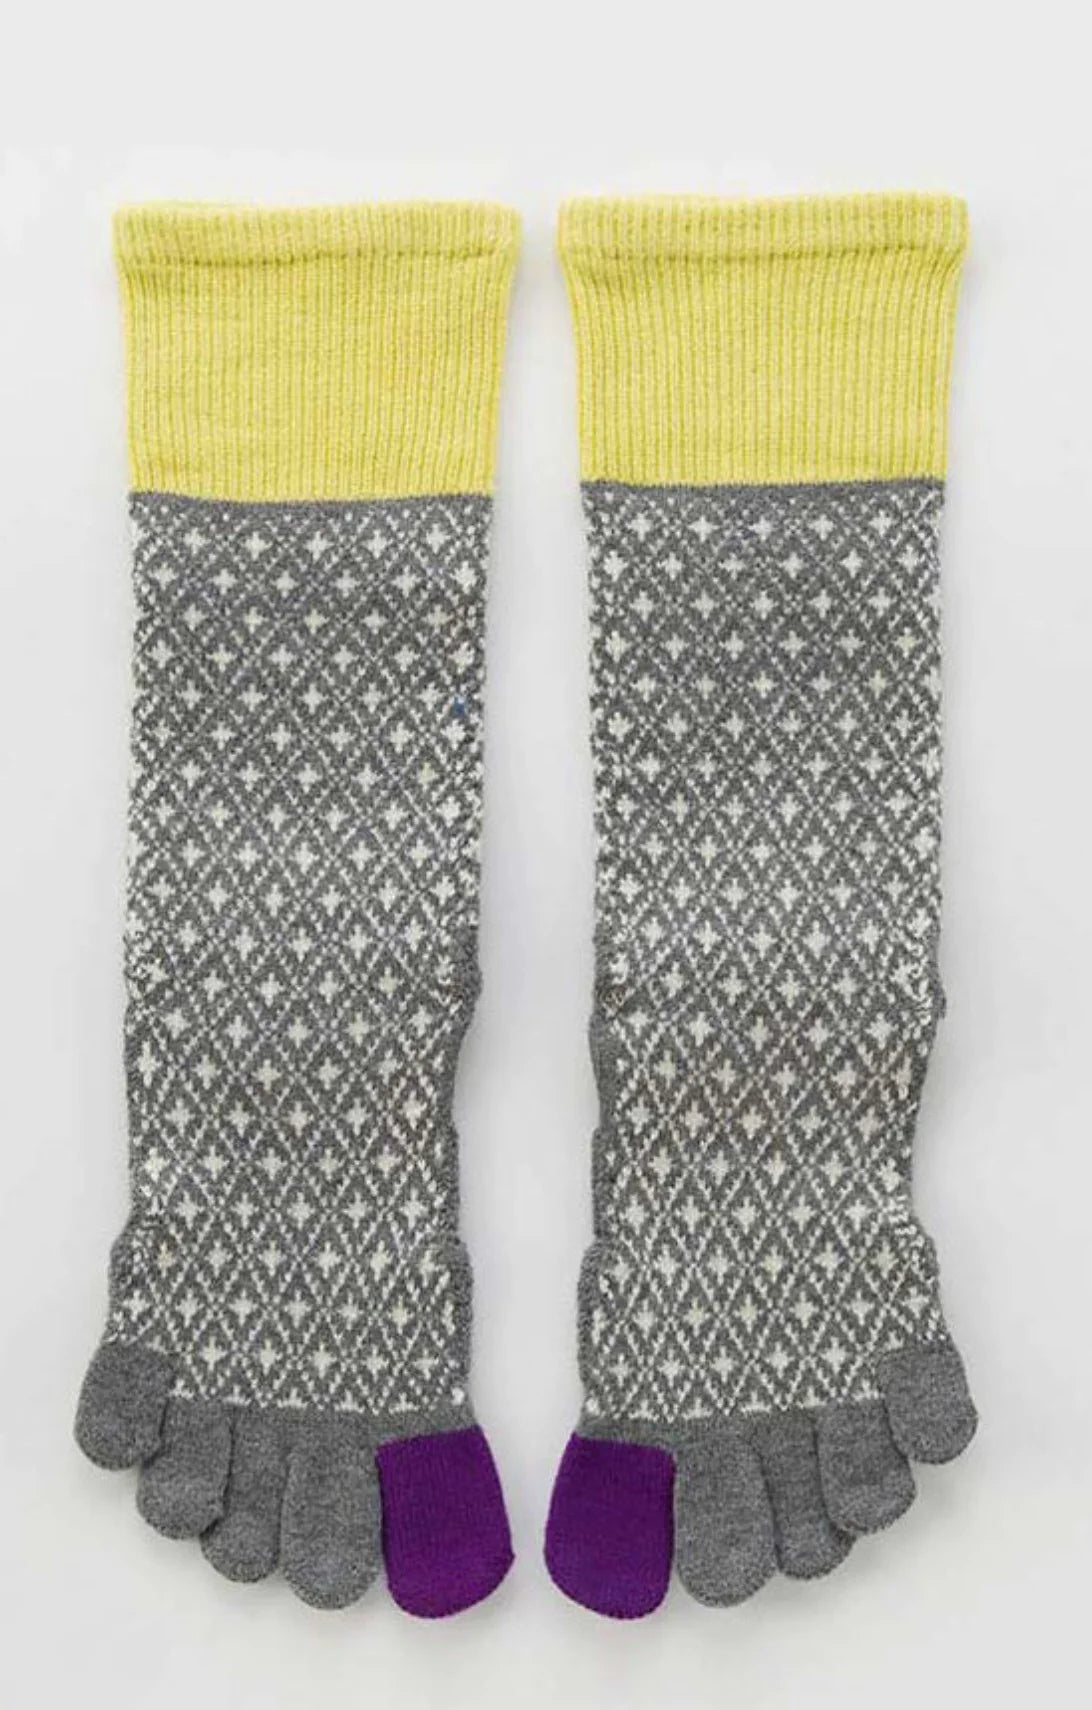 Knitido+ Yama Yoga and Pilates Toe Socks, Non-Slip, Size:UK 5.5-8